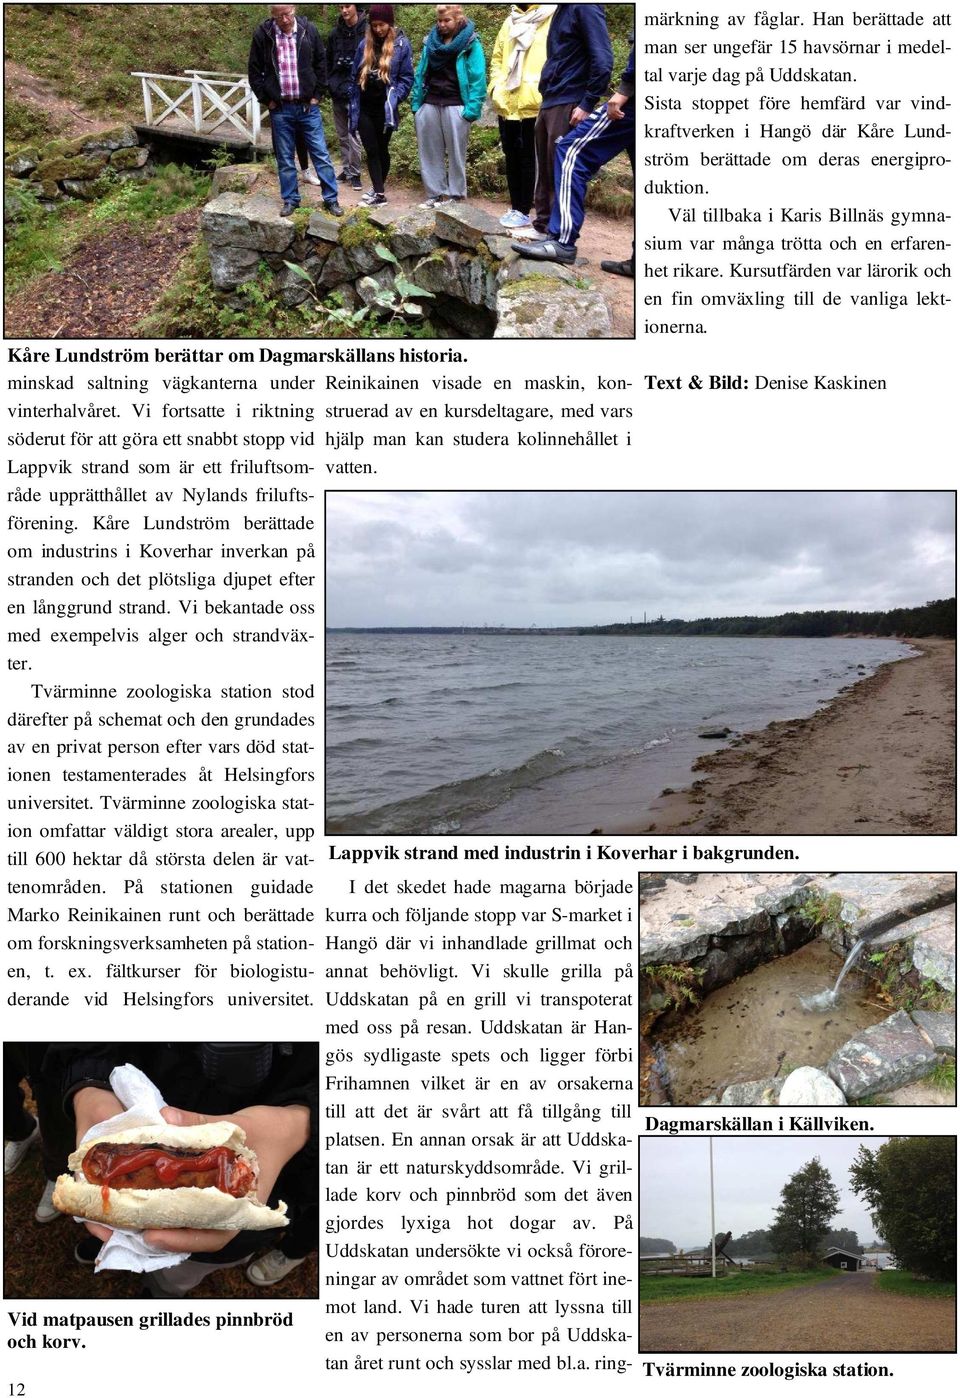 Kåre Lundström berättade om industrins i Koverhar inverkan på stranden och det plötsliga djupet efter en långgrund strand. Vi bekantade oss med exempelvis alger och strandväxter.